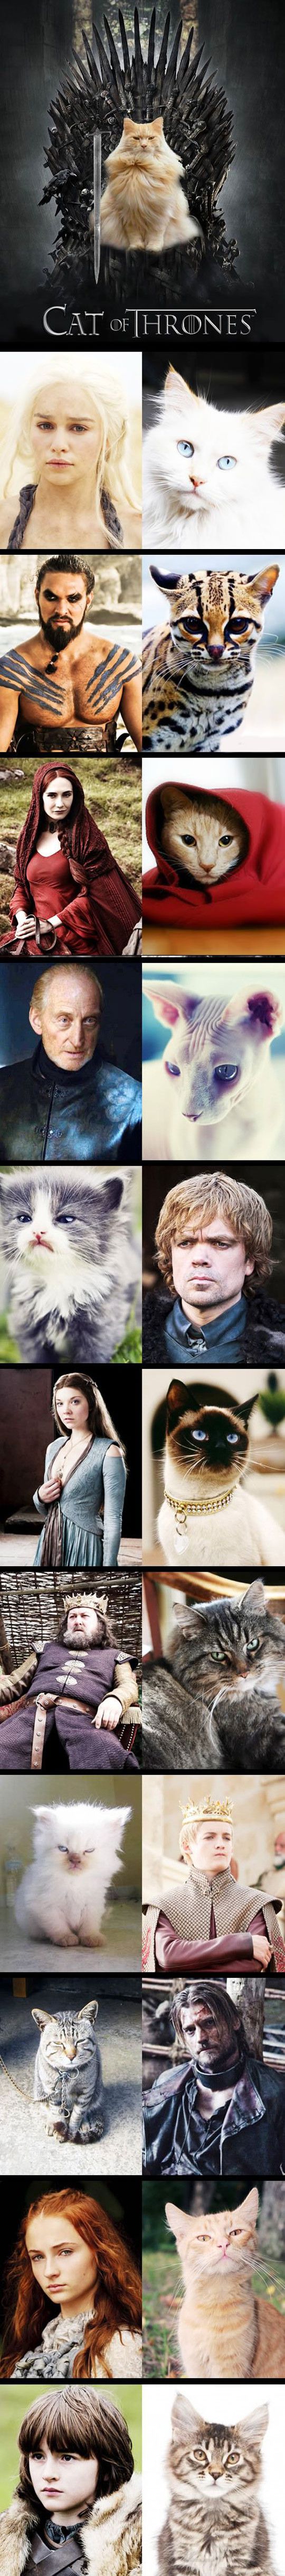 Cat of Thrones.